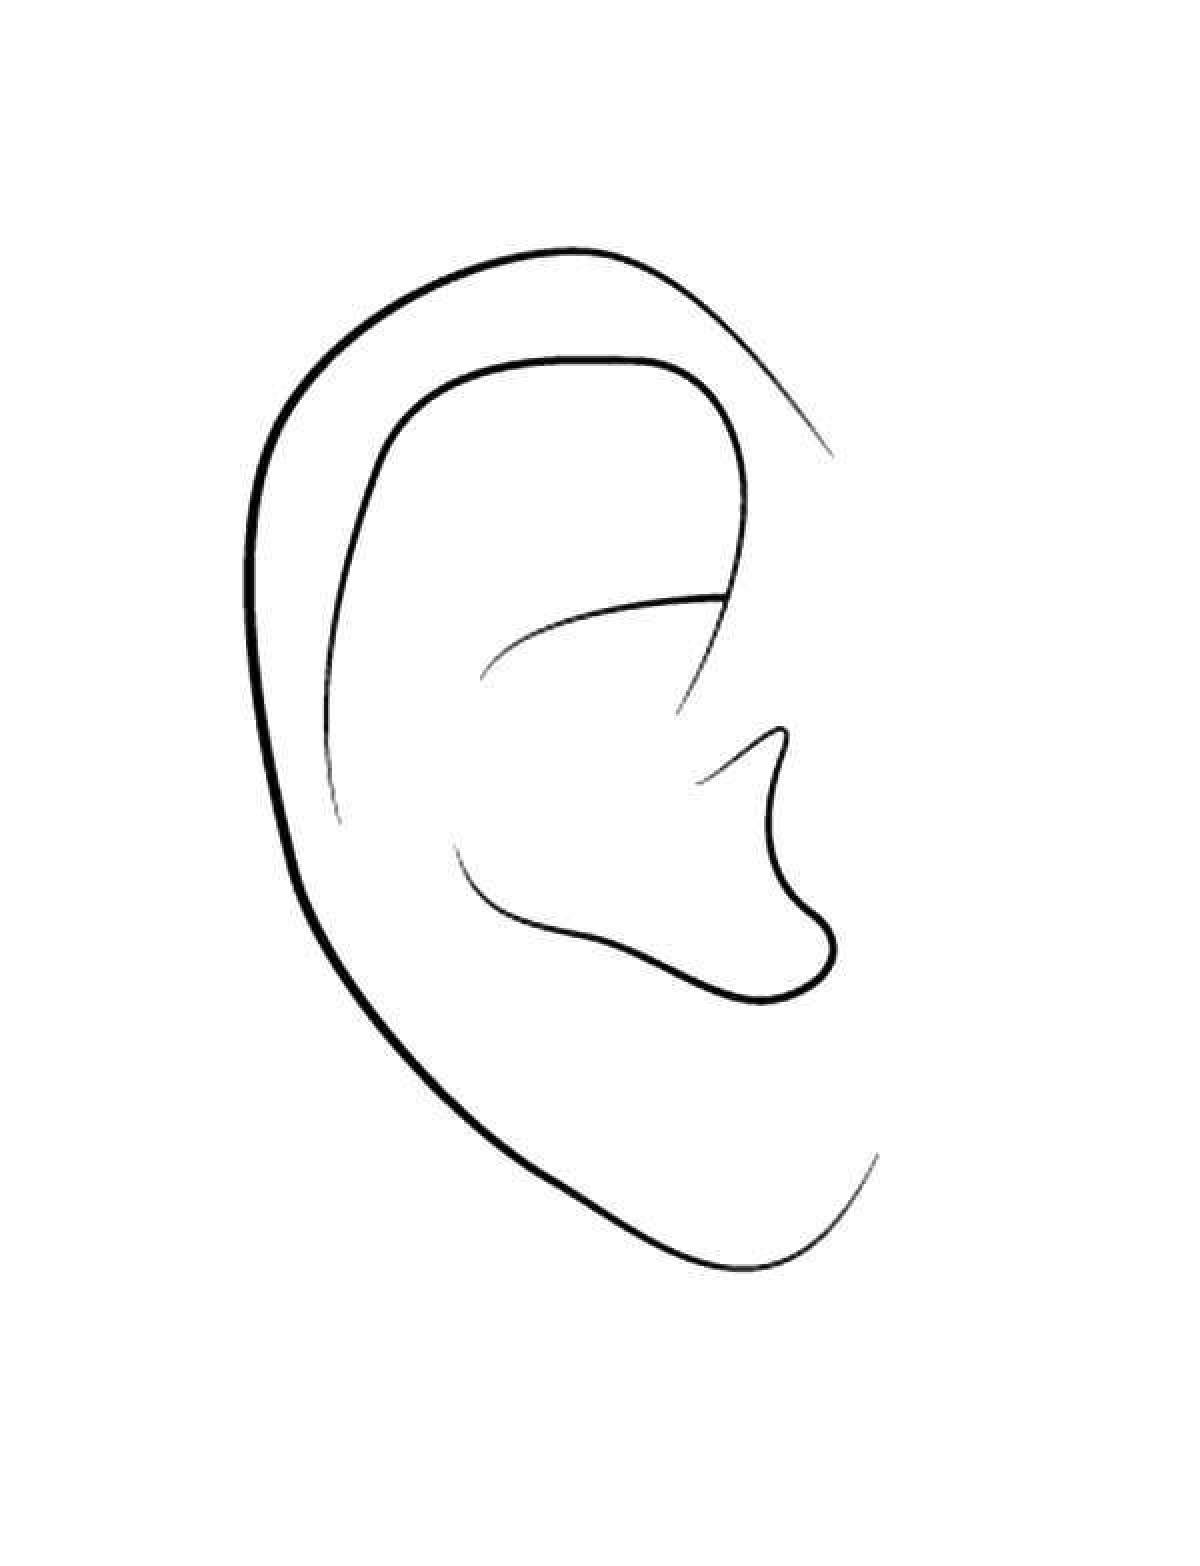 Ear #1